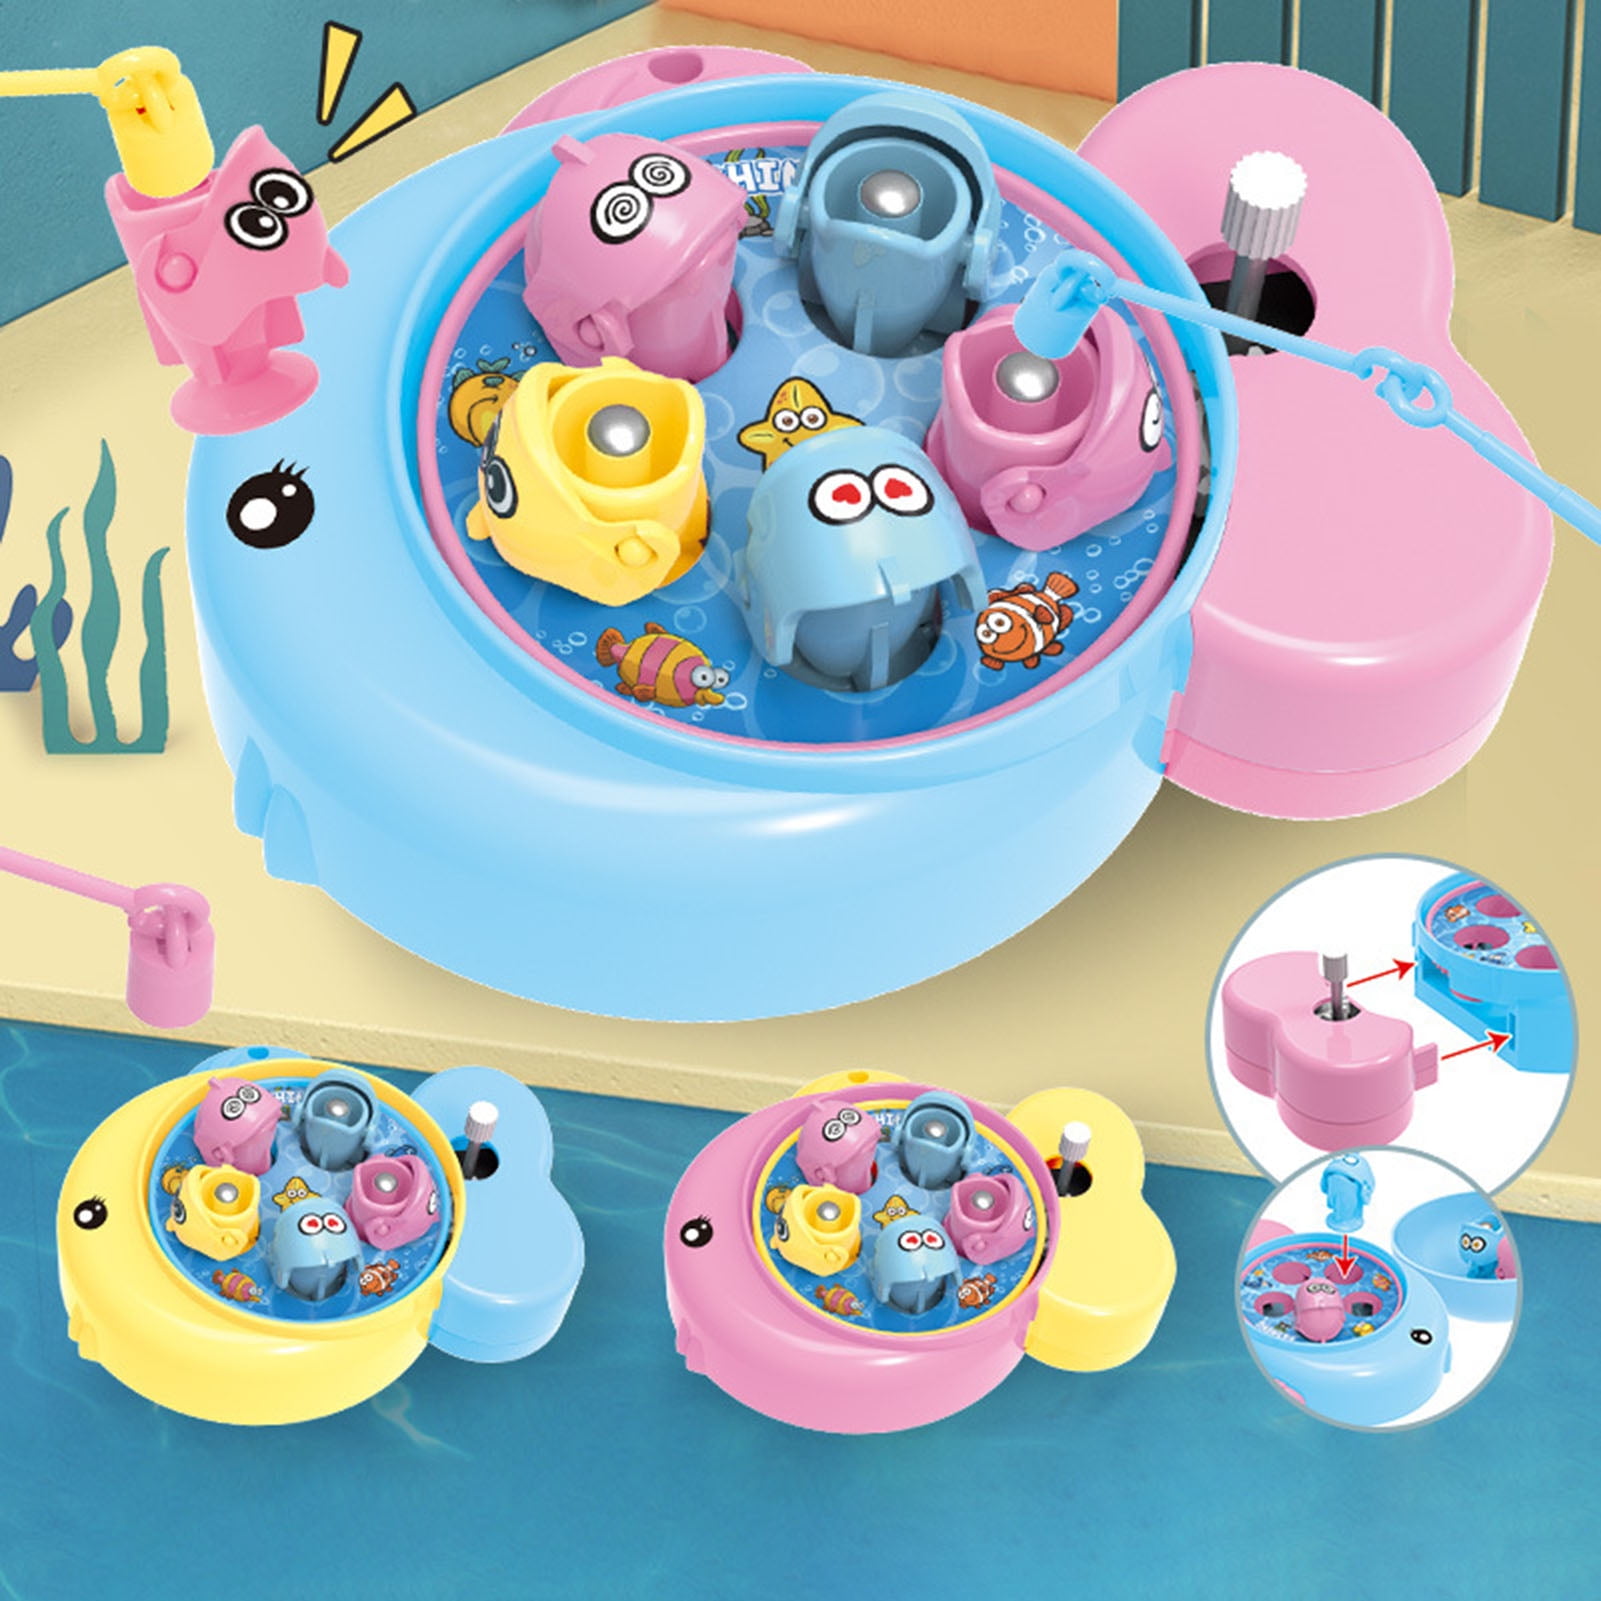 LOYUEGIYO Baby Bath Toys,Magnet Fishing Game Bath Baby Toy for 1-3